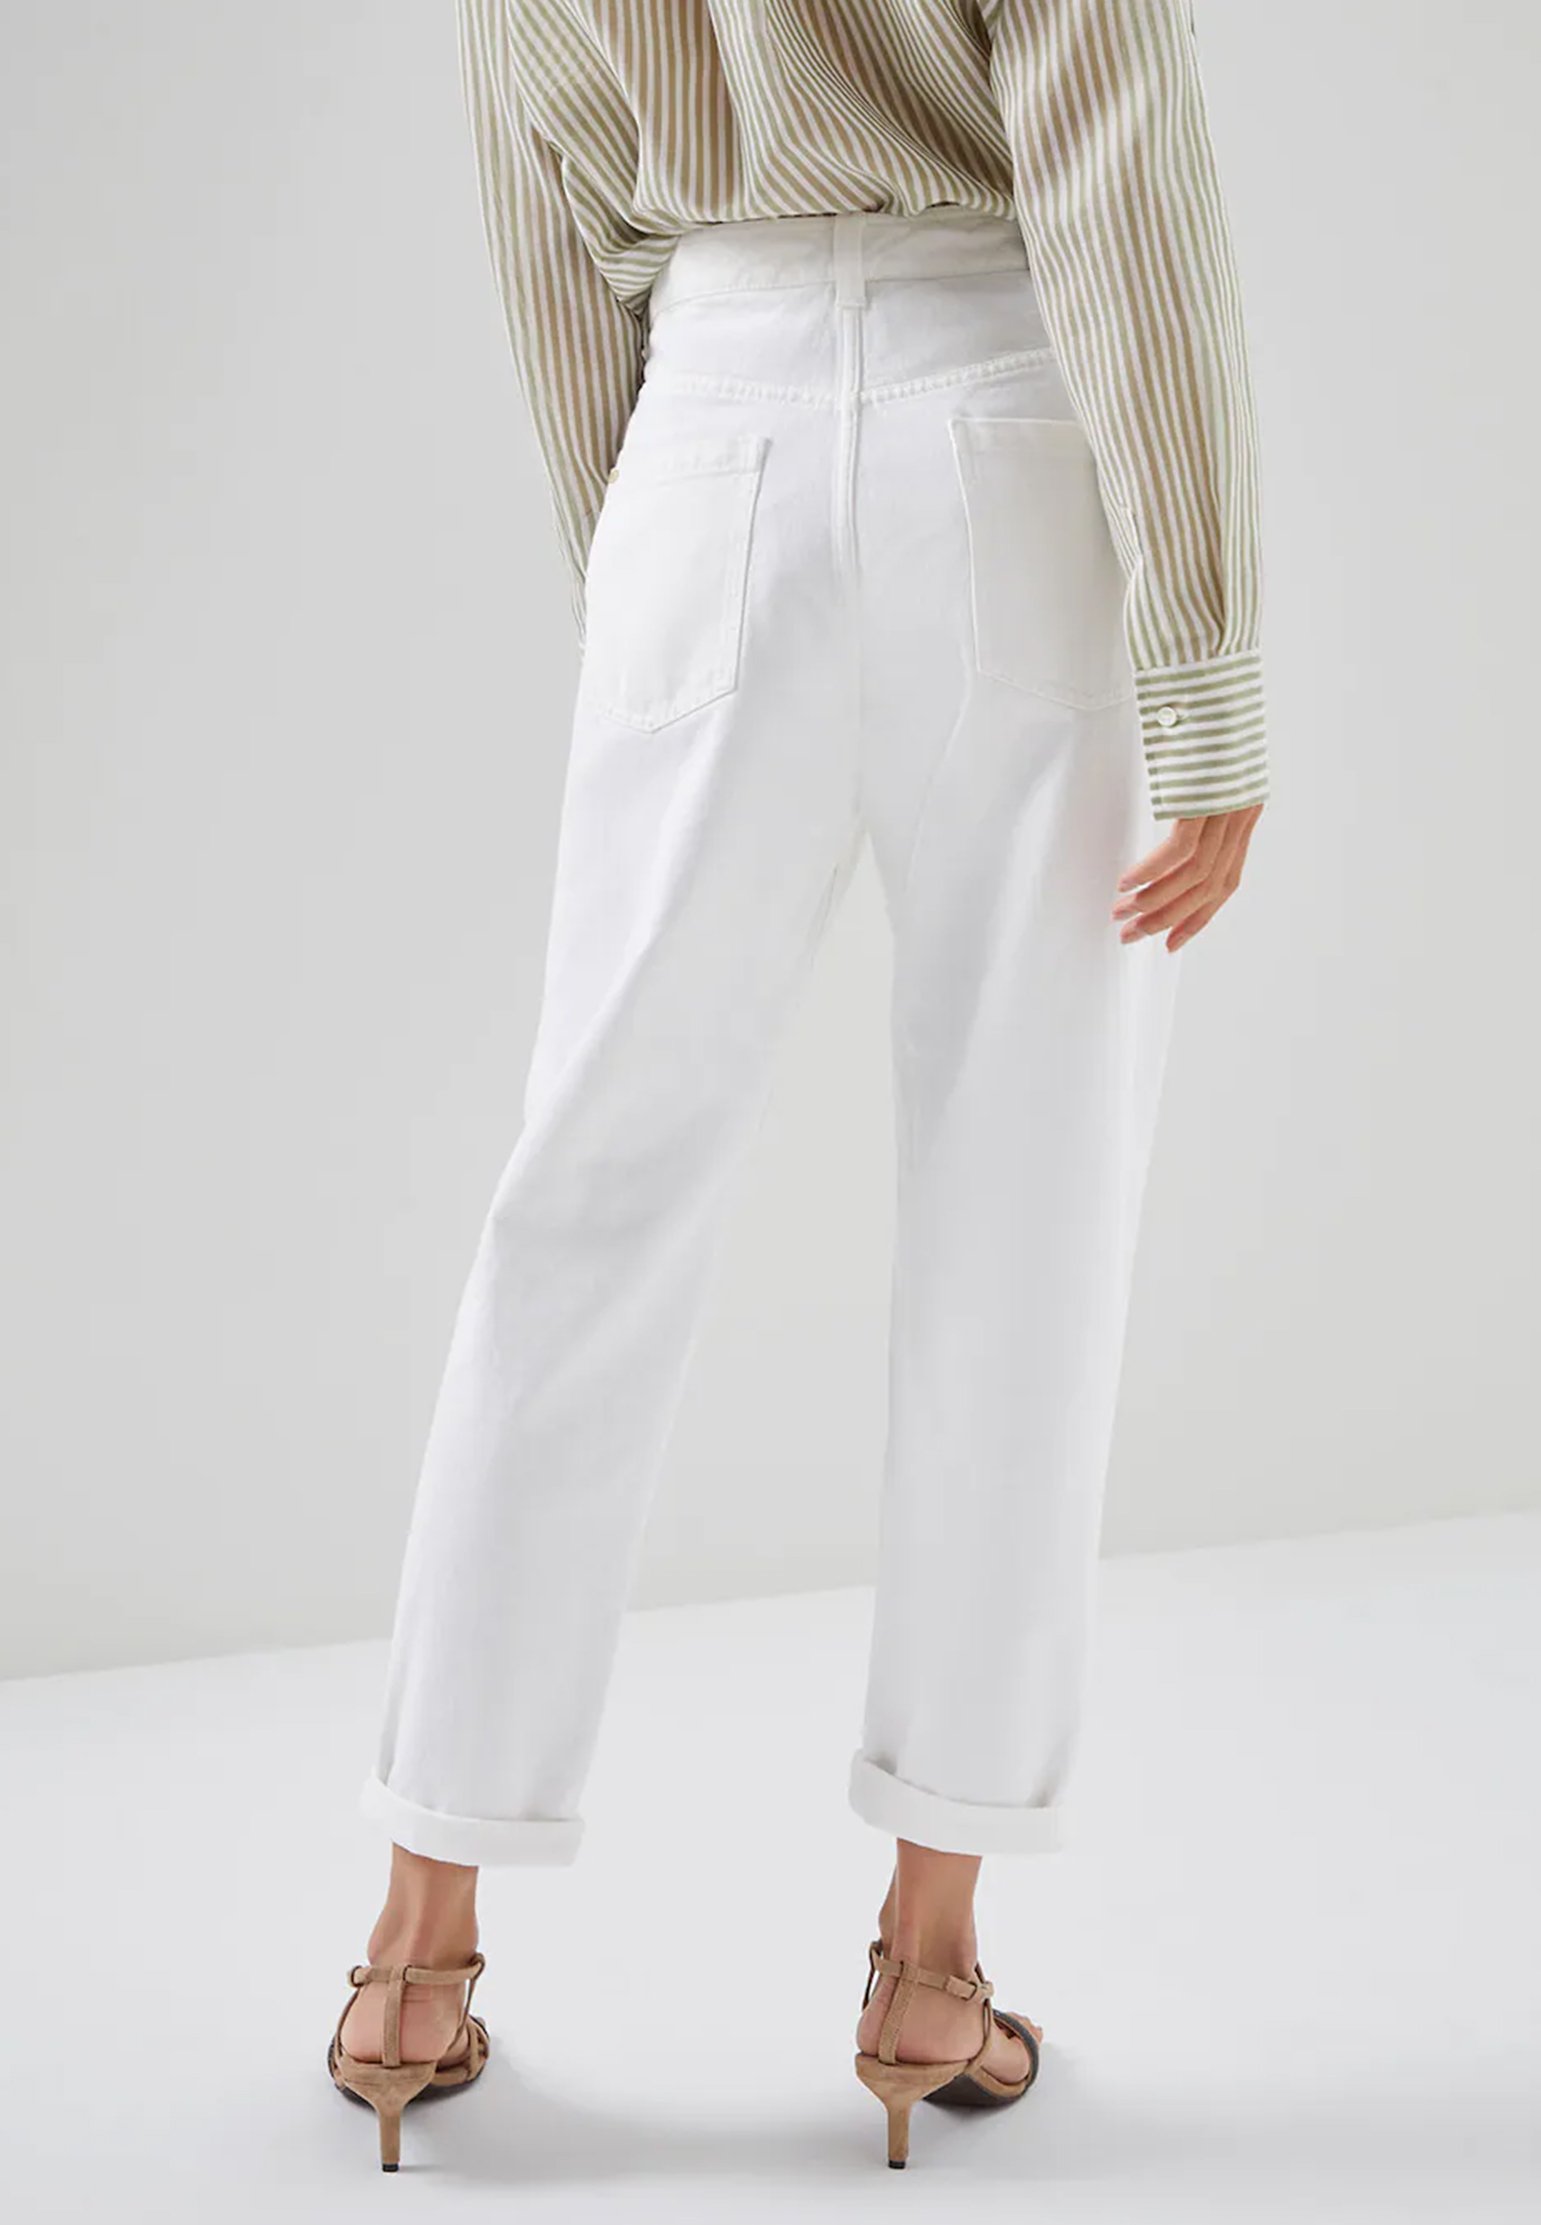 Jeans BRUNELLO CUCINELLI Color: white (Code: 616) in online store Allure